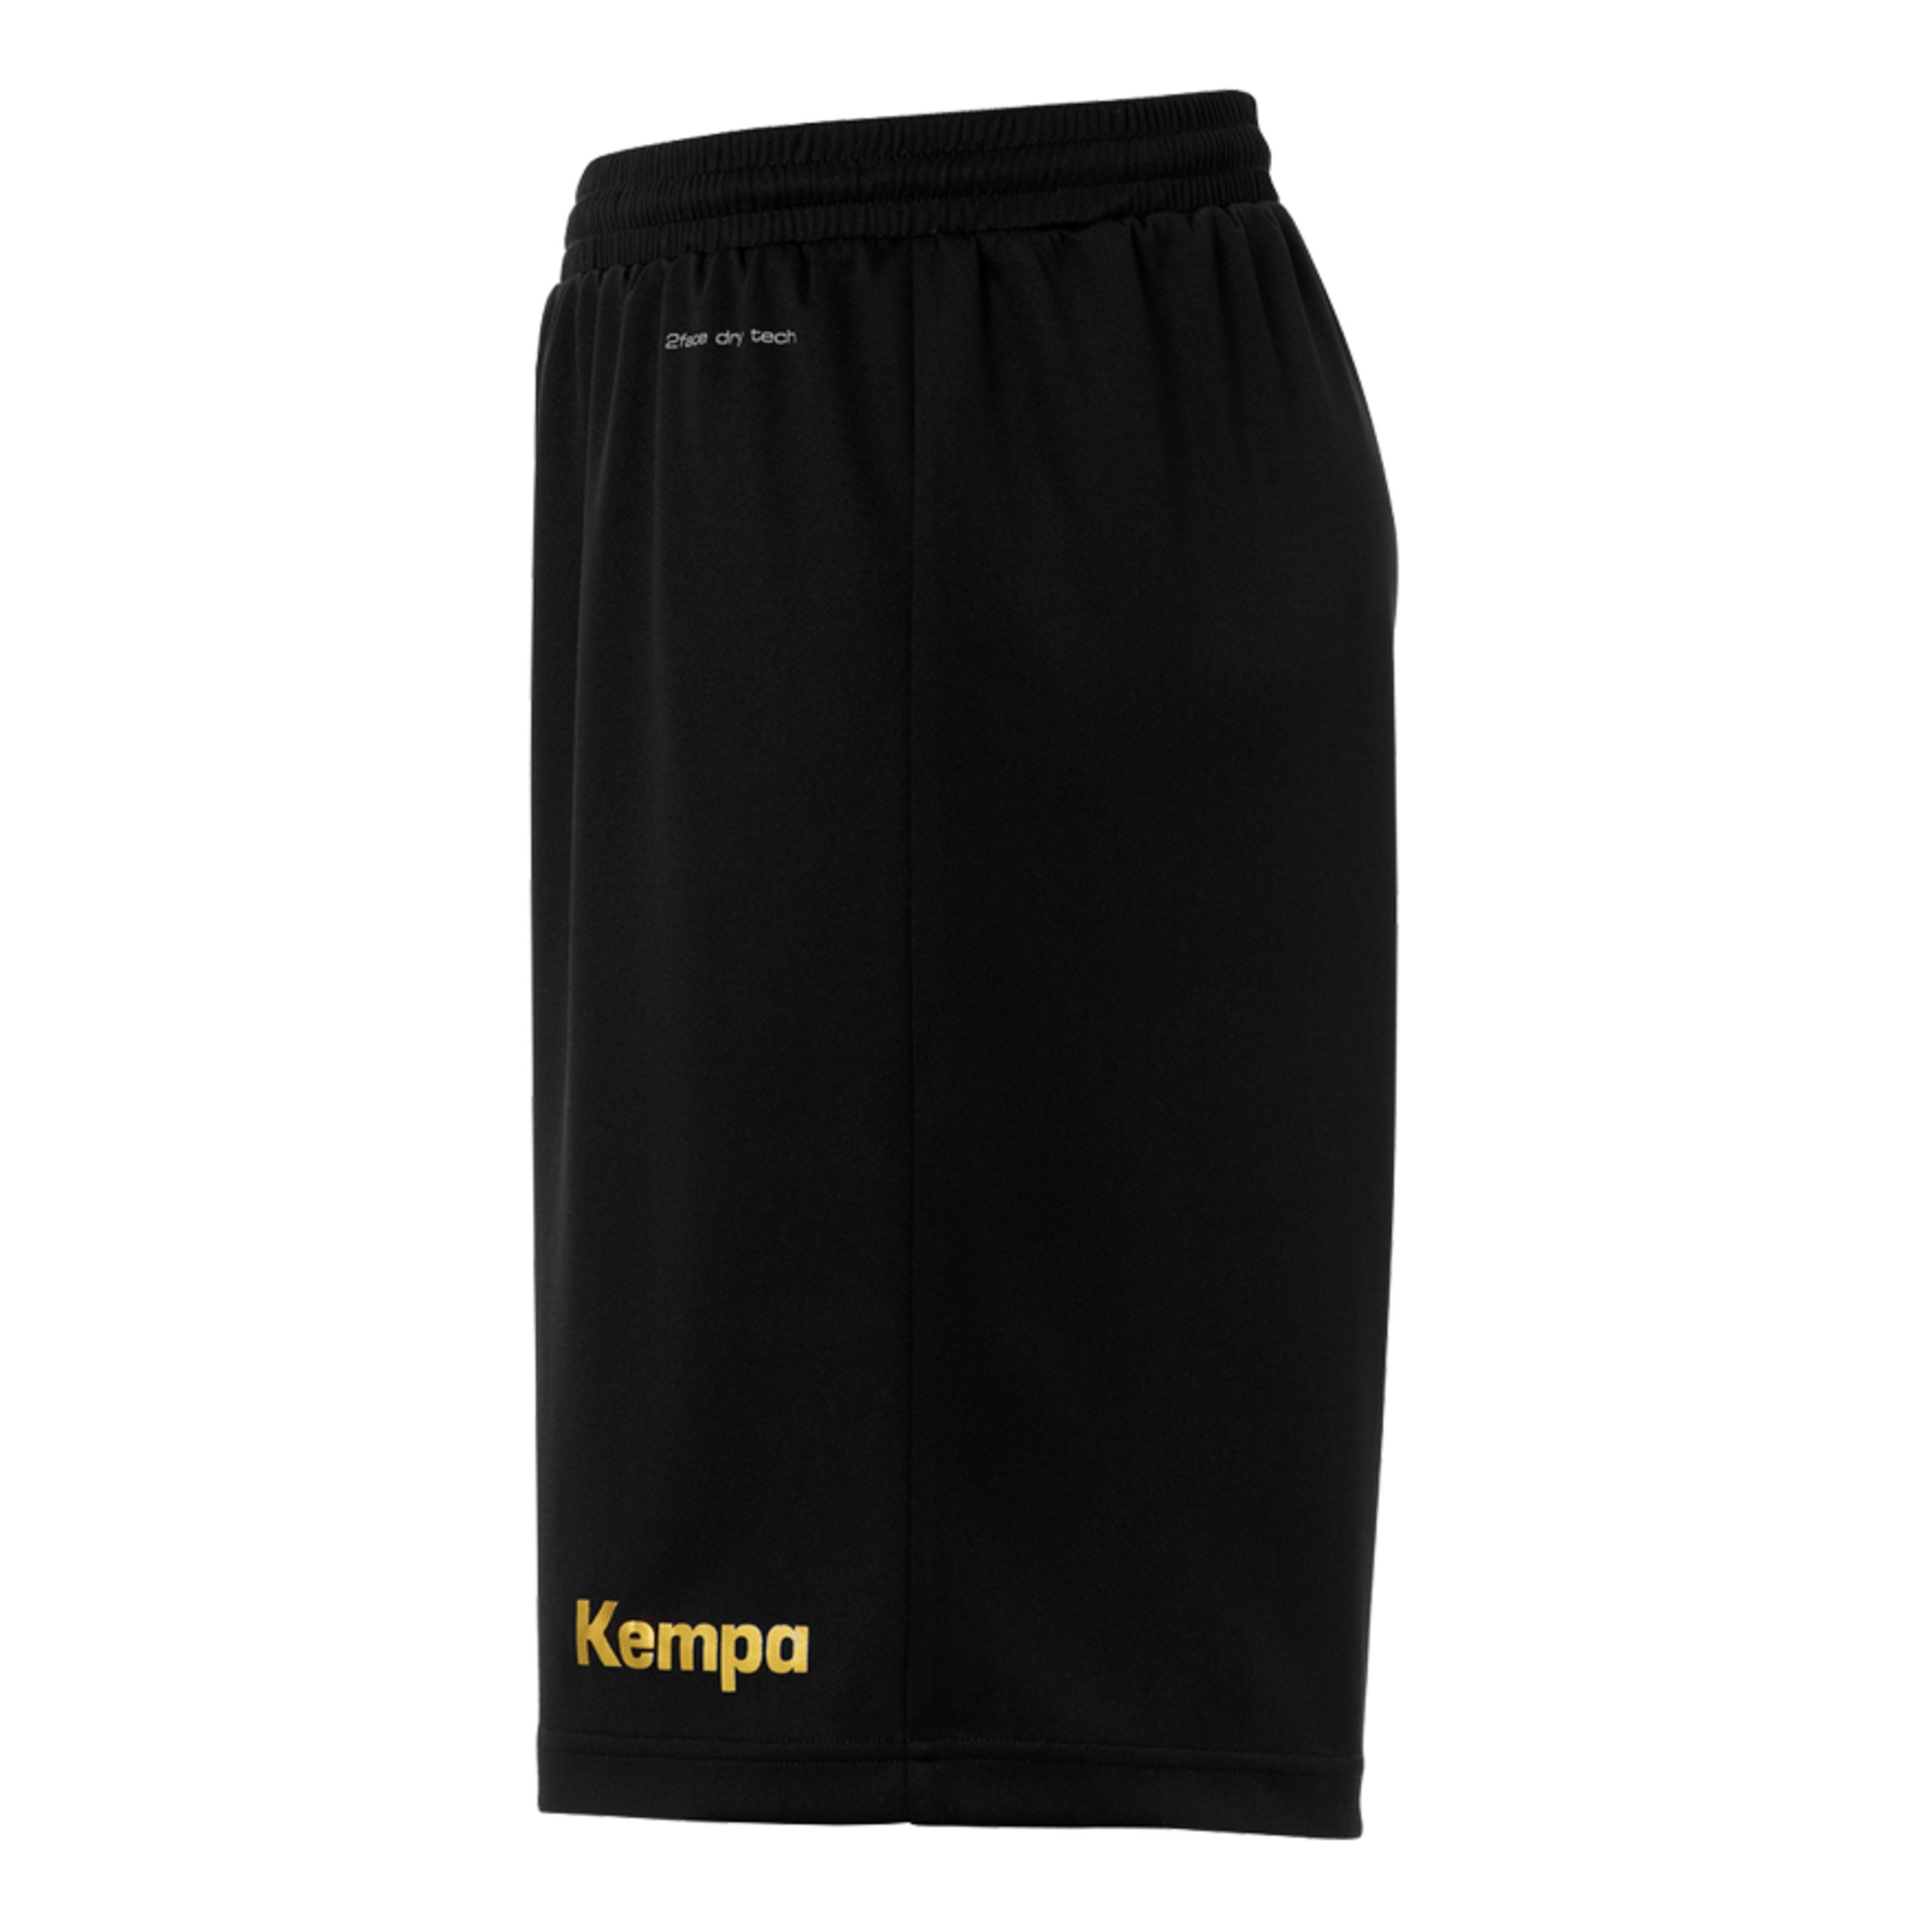 Curve Shorts Negro/dorado Kempa